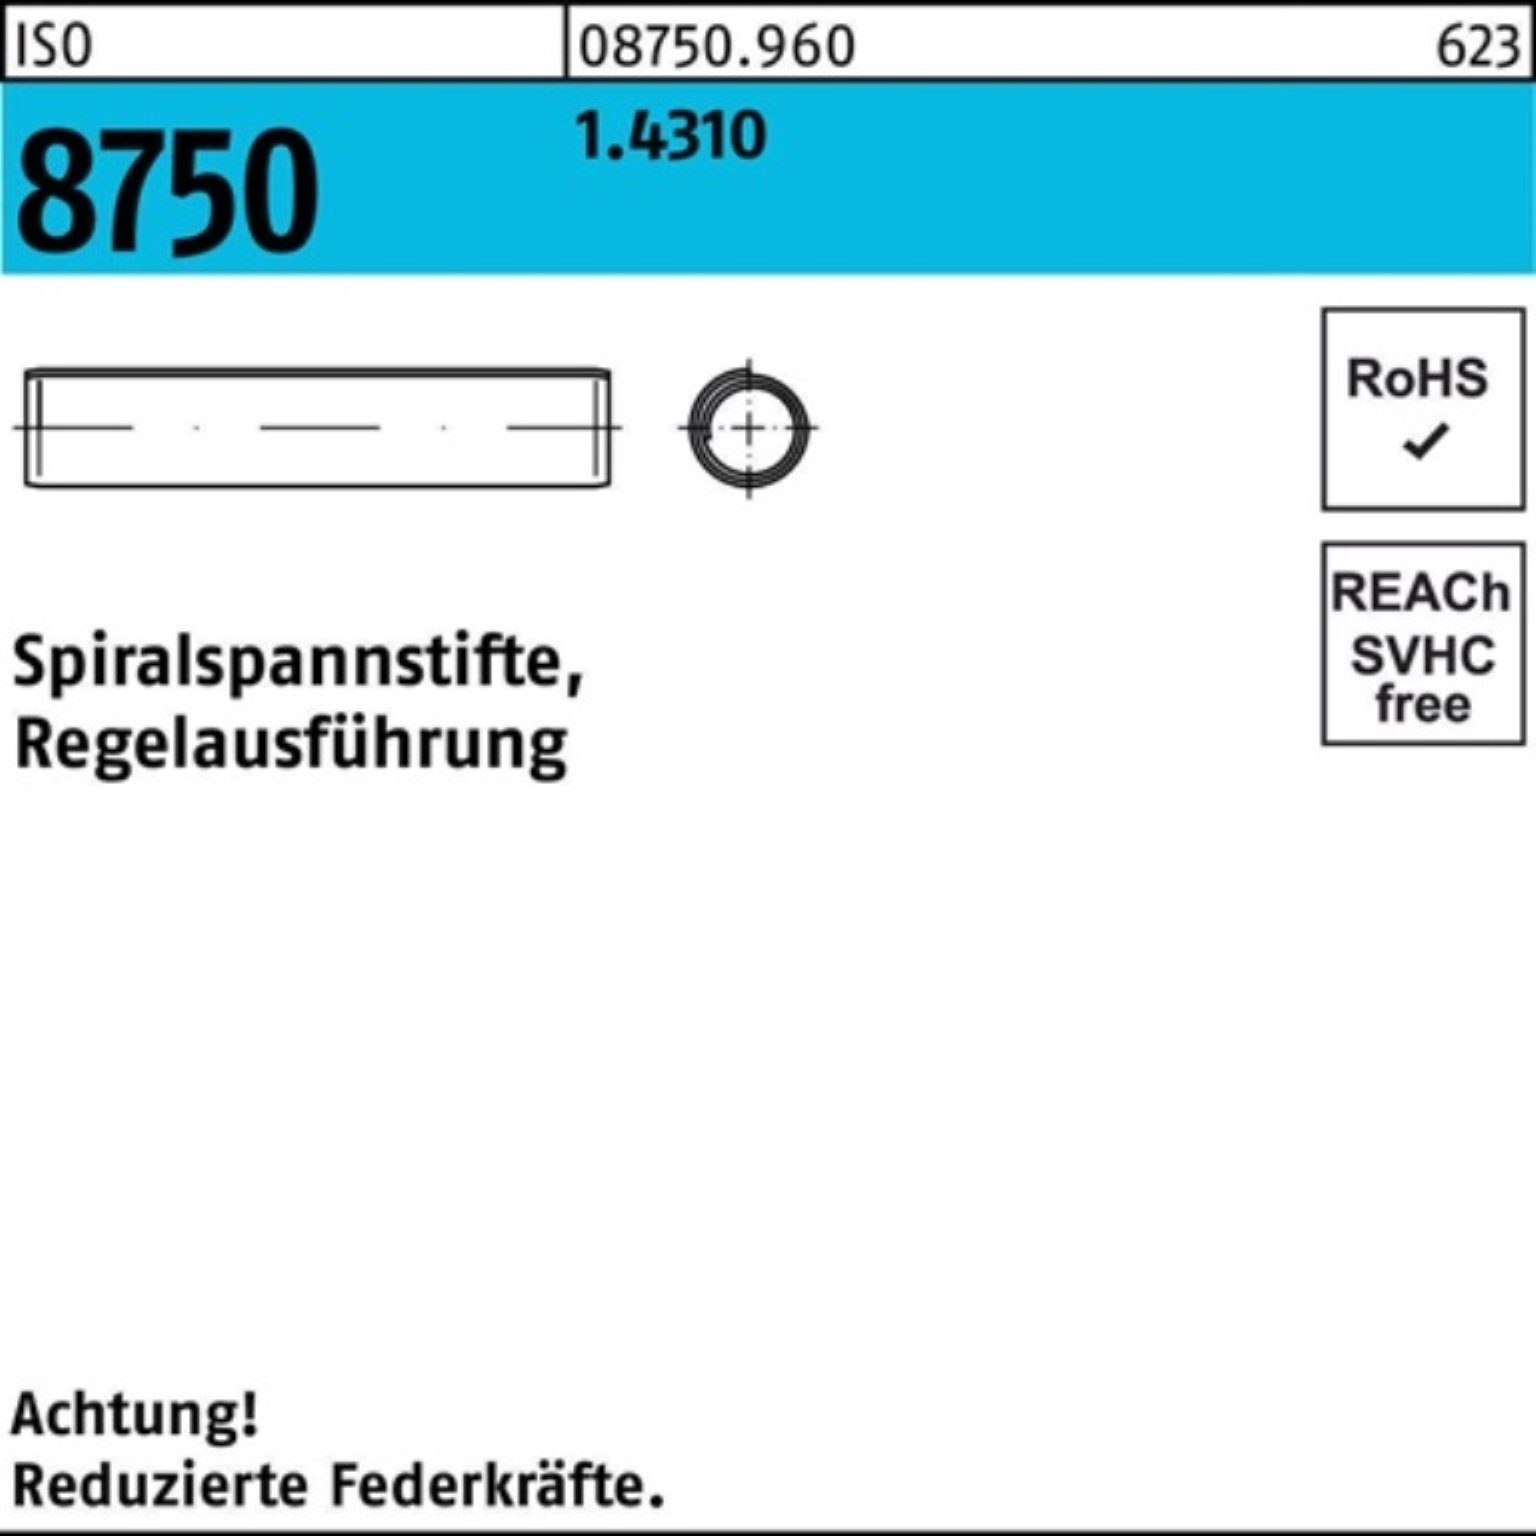 500er 20 Stüc ISO Pack Reyher 8750 Spannstift 500 4x Spiralspannstift 1.4310 Regelausf.